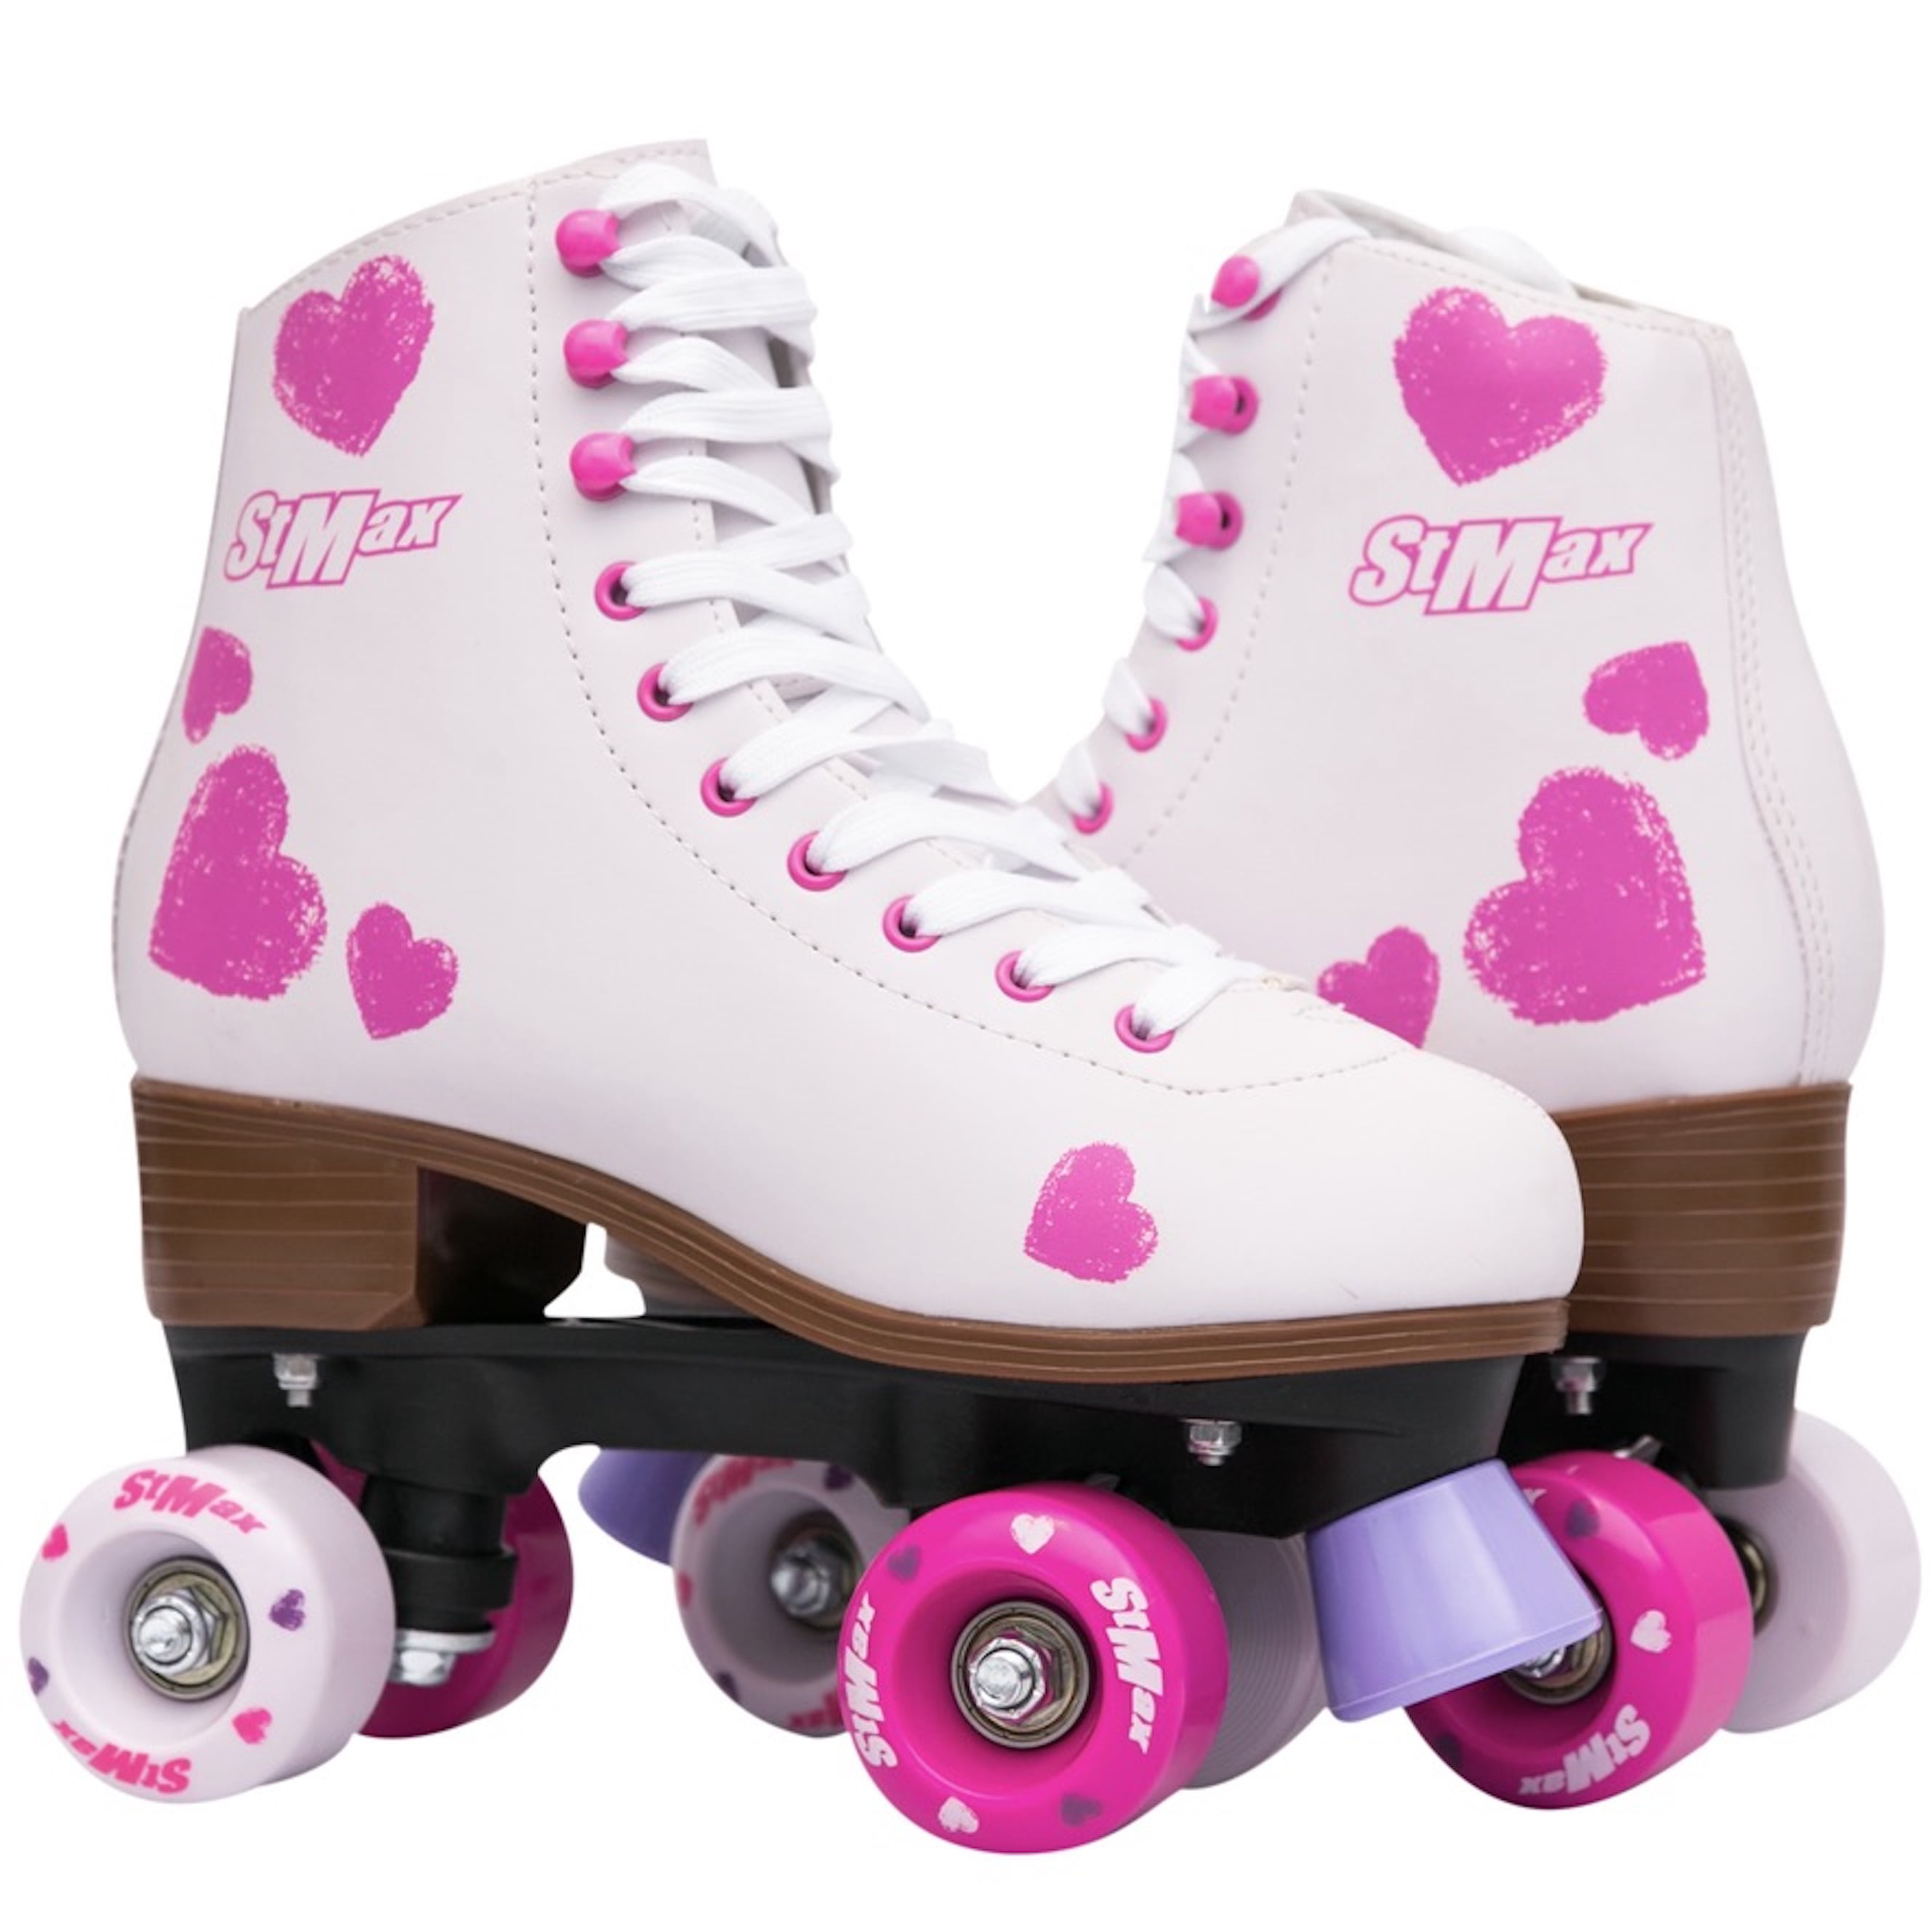 Stmax Quad Roller Skates forWomen Size 8 Derby classic Vintage floral Pink 